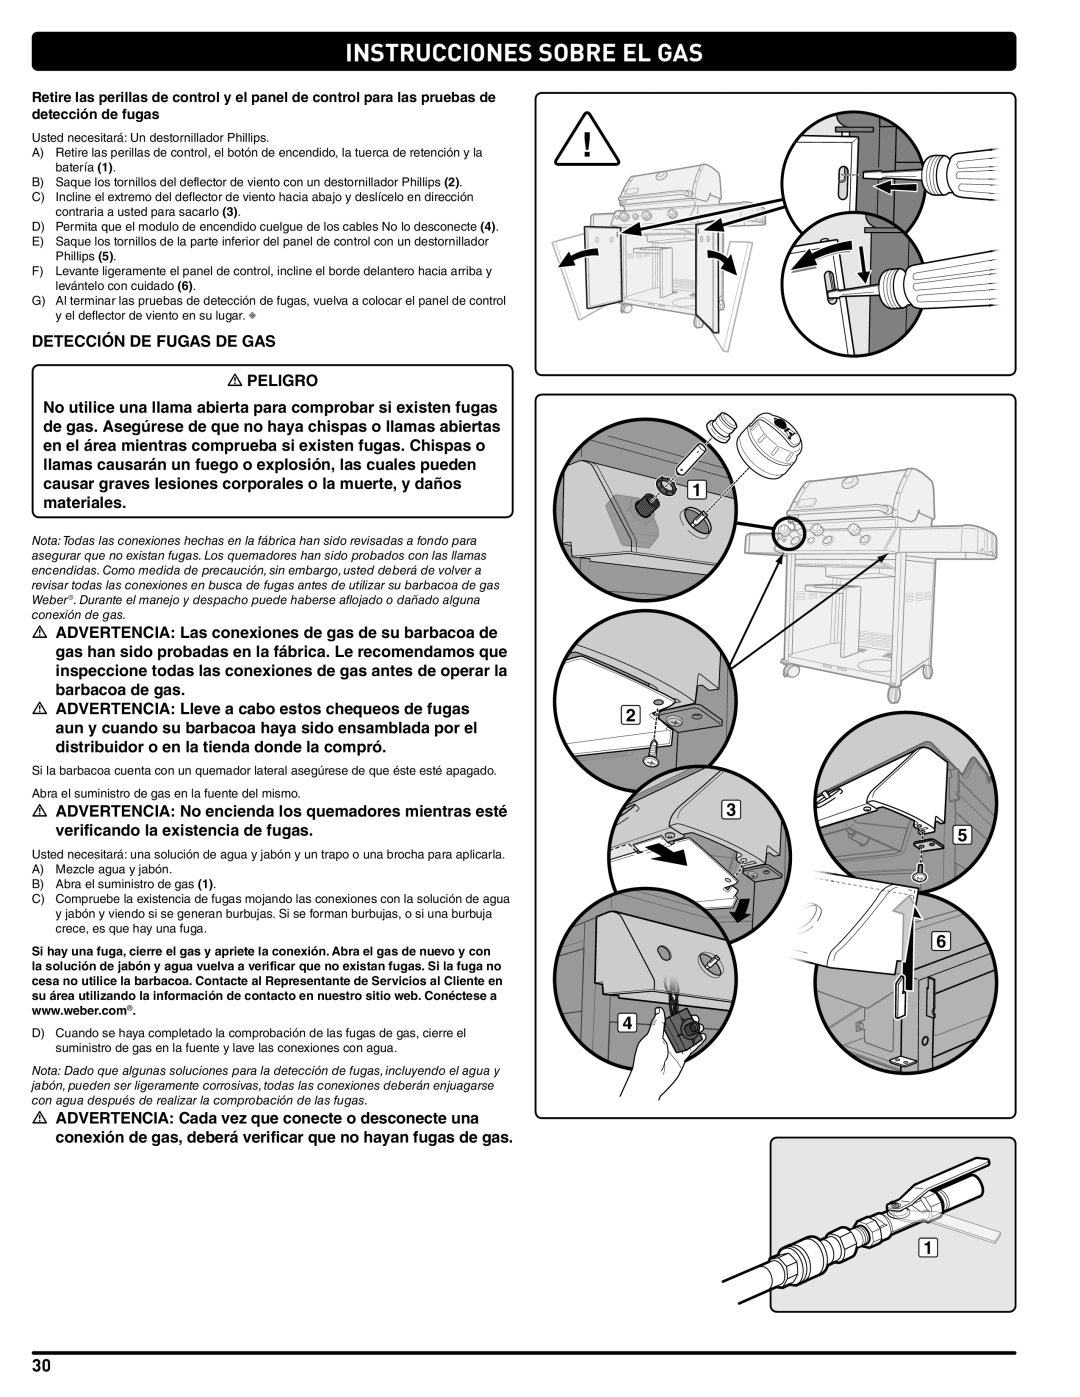 Weber 56515 manual Instrucciones Sobre El Gas, DETECCIÓN DE FUGAS DE GAS m PELIGRO 